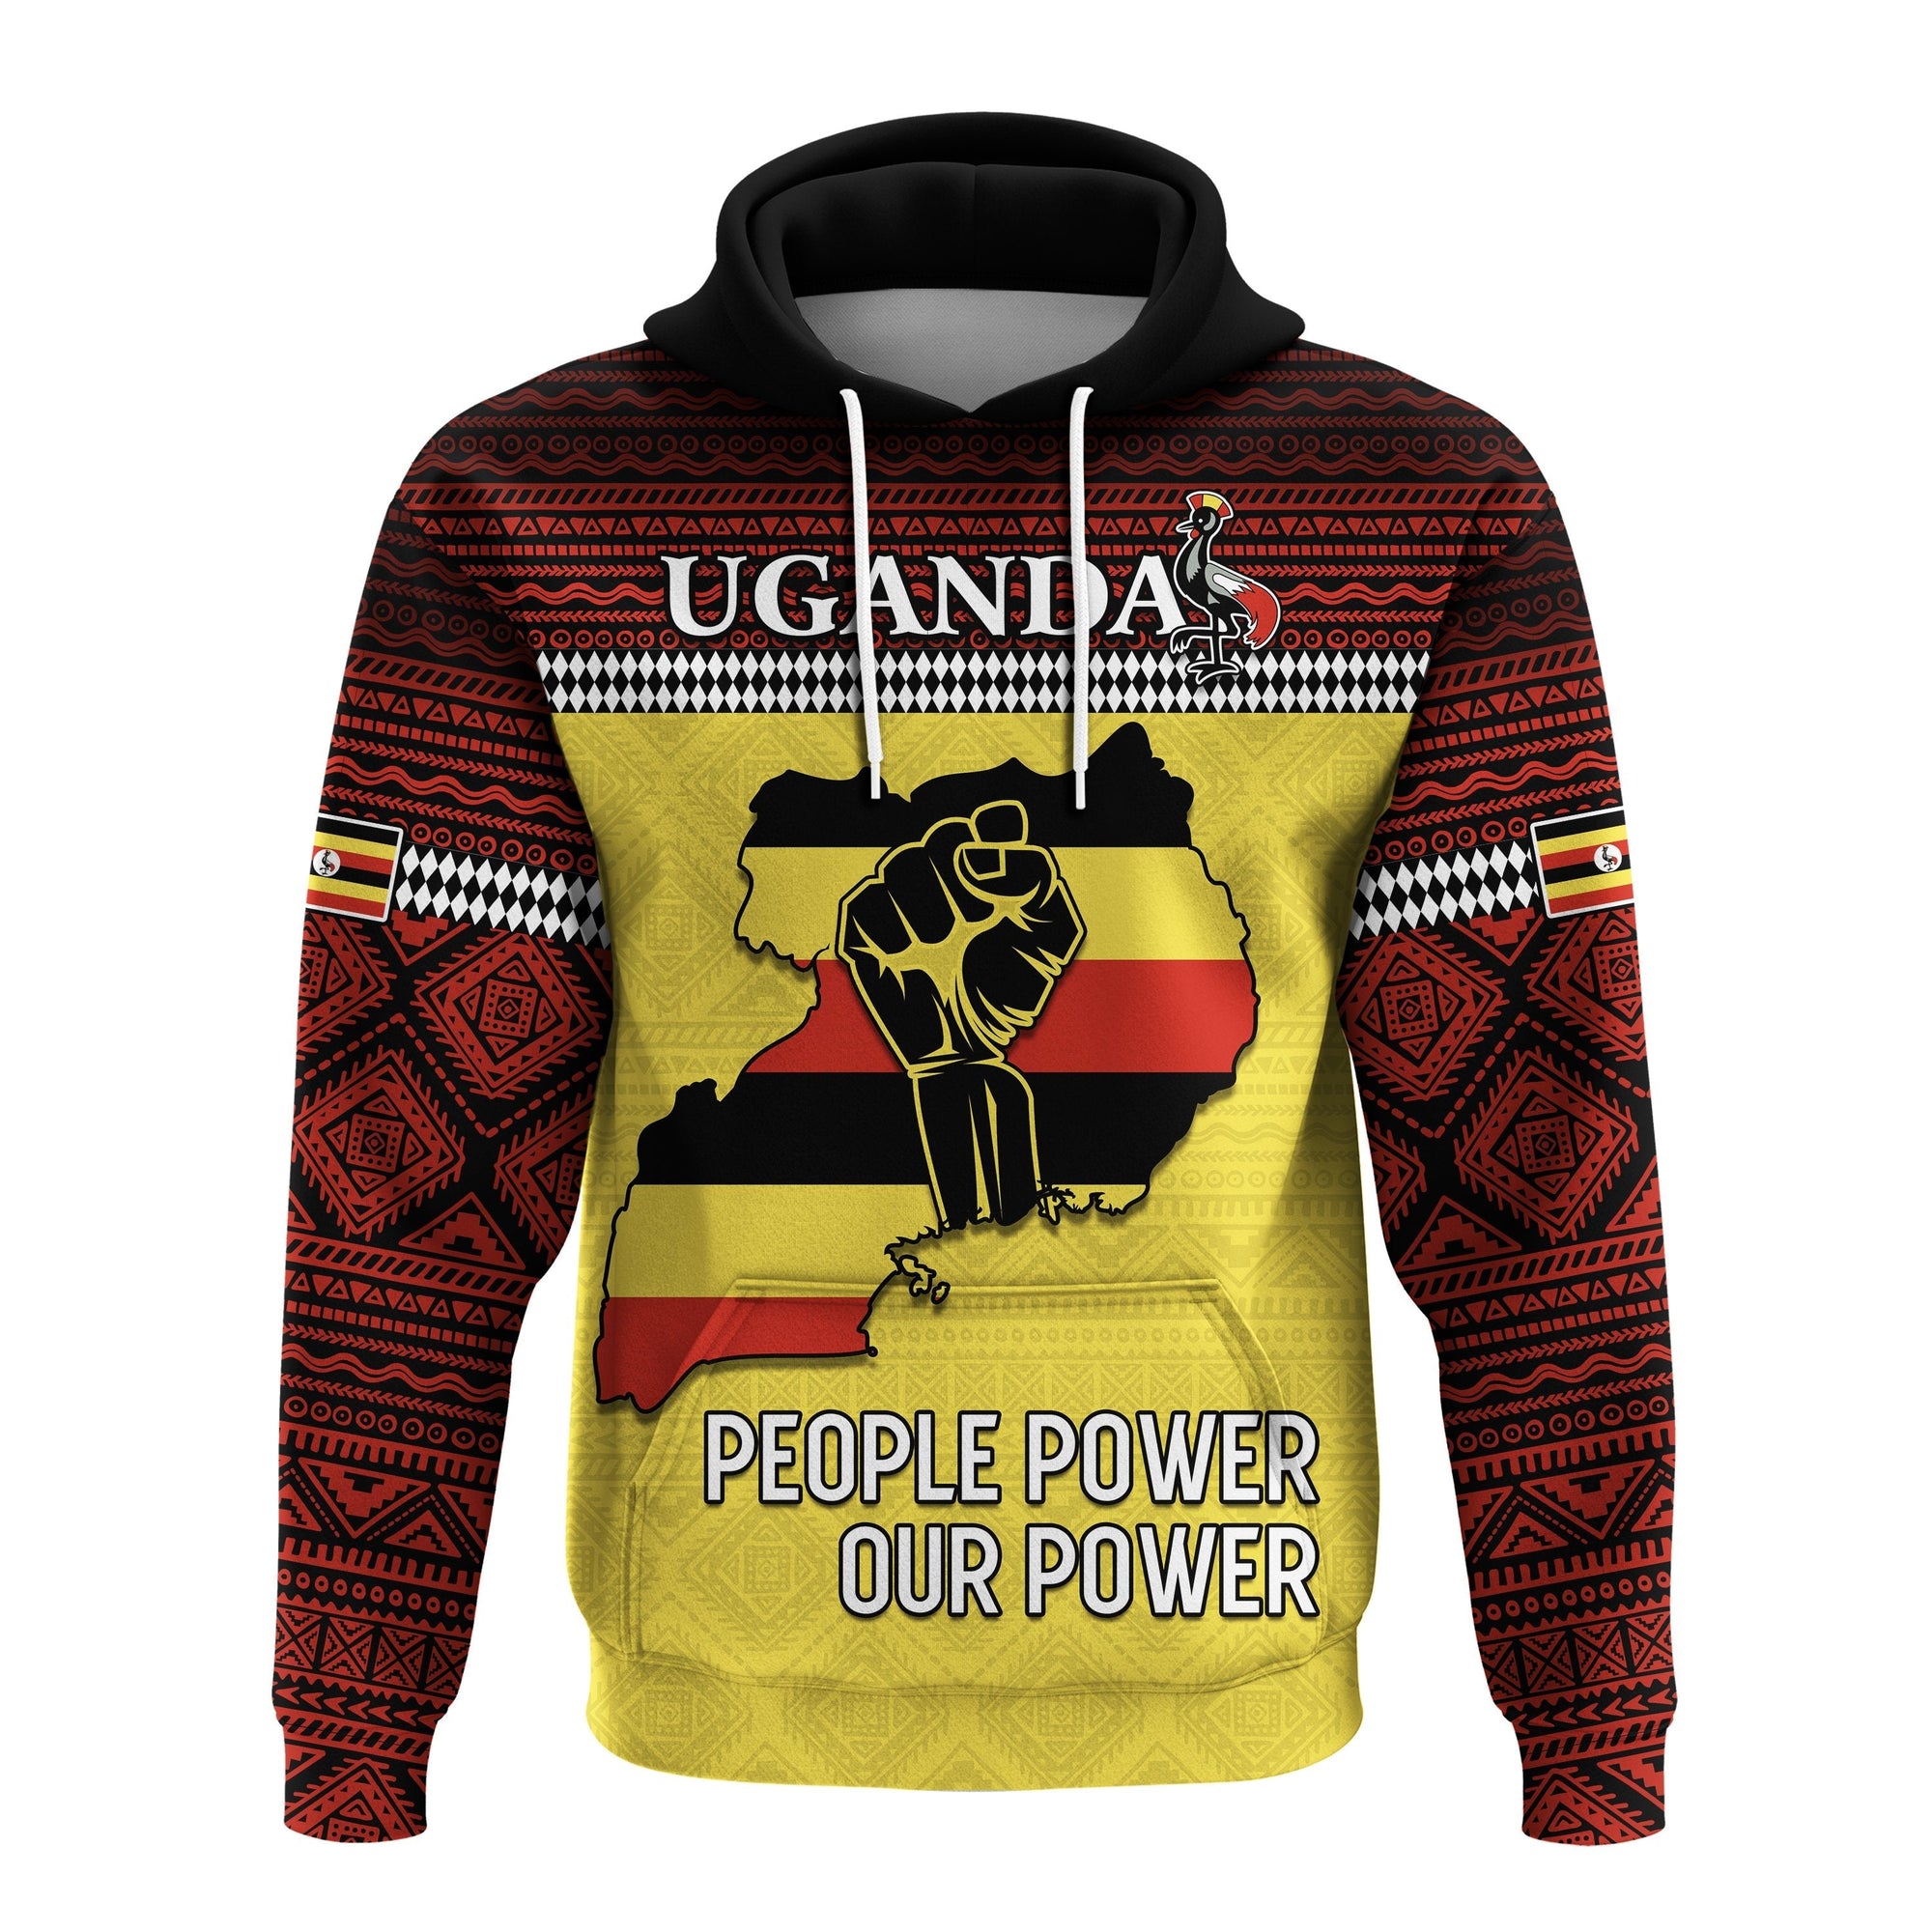 uganda-hoodie-african-pattern-people-power-our-power